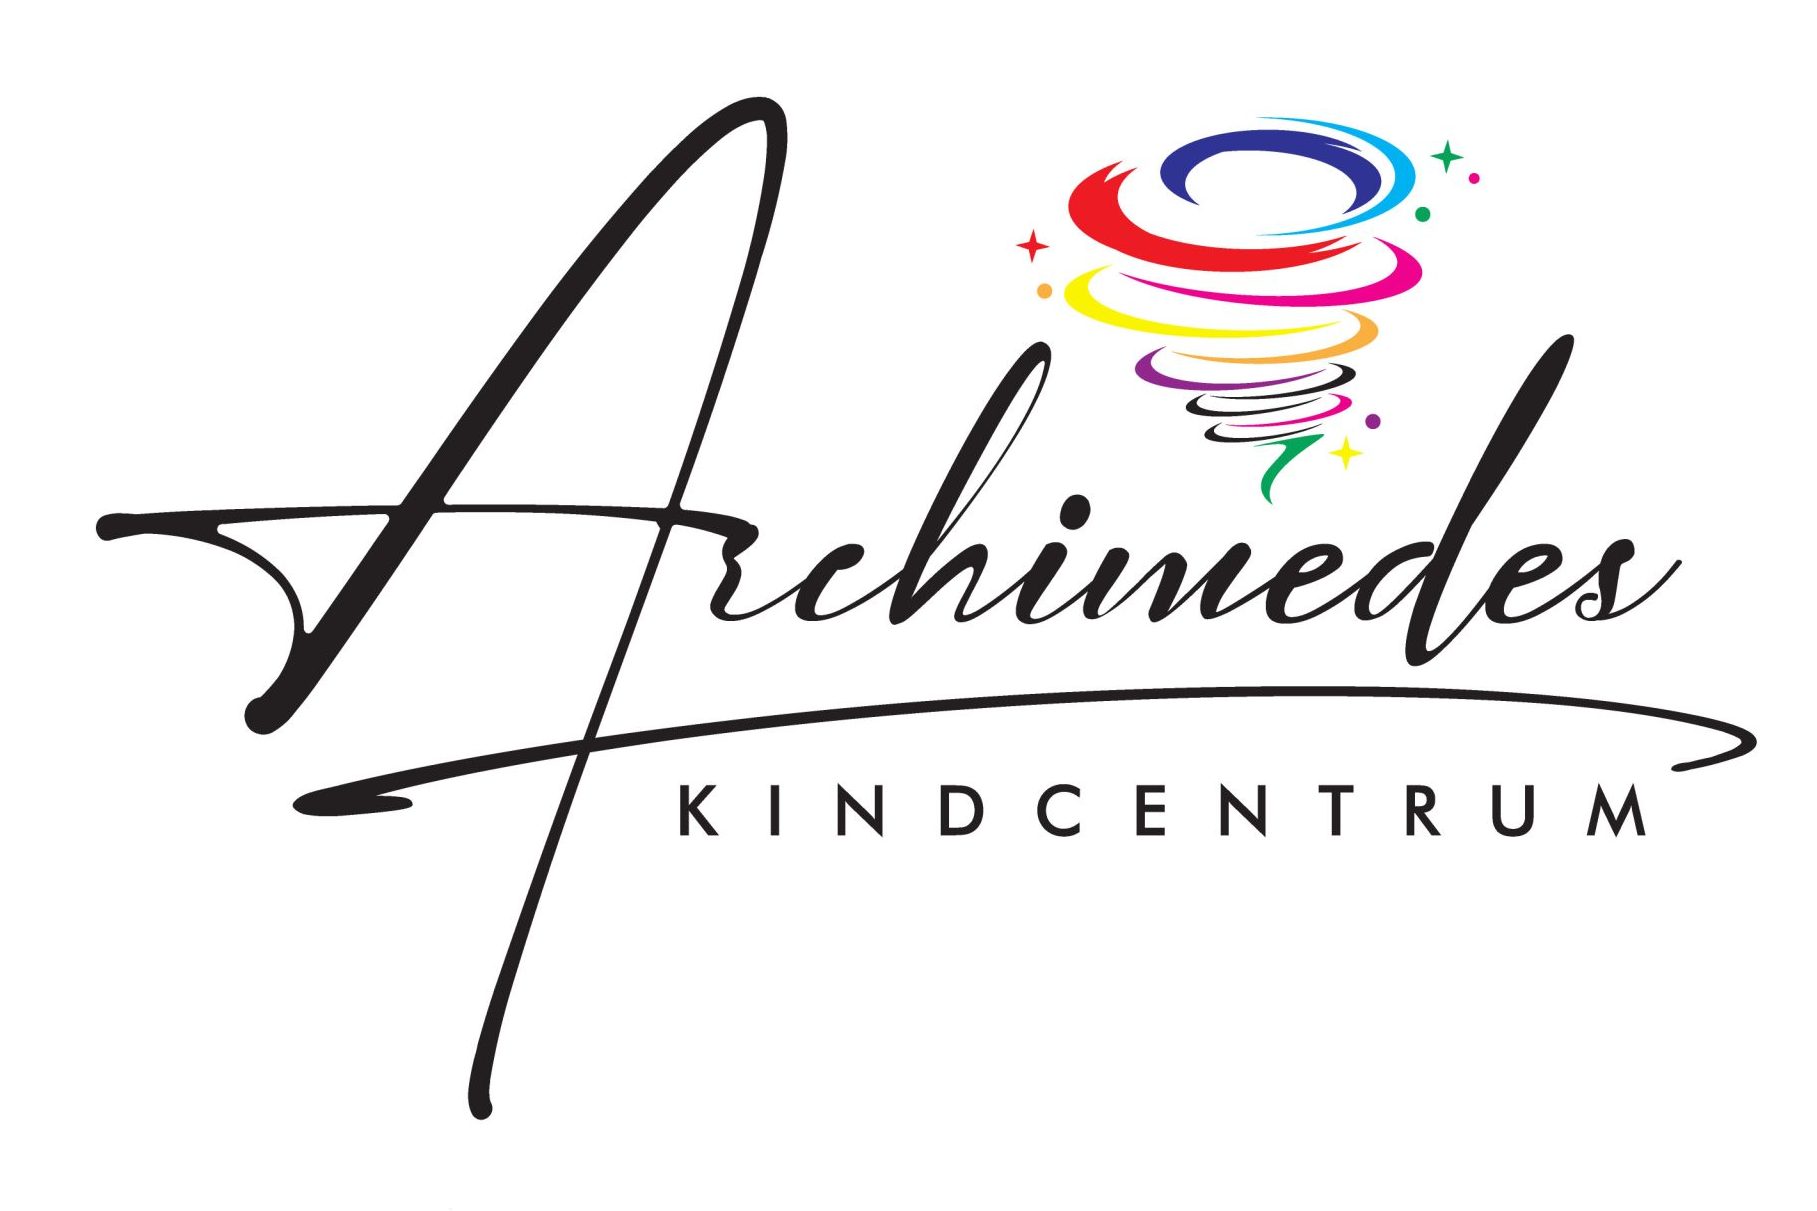 Kindcentrum Archimedes